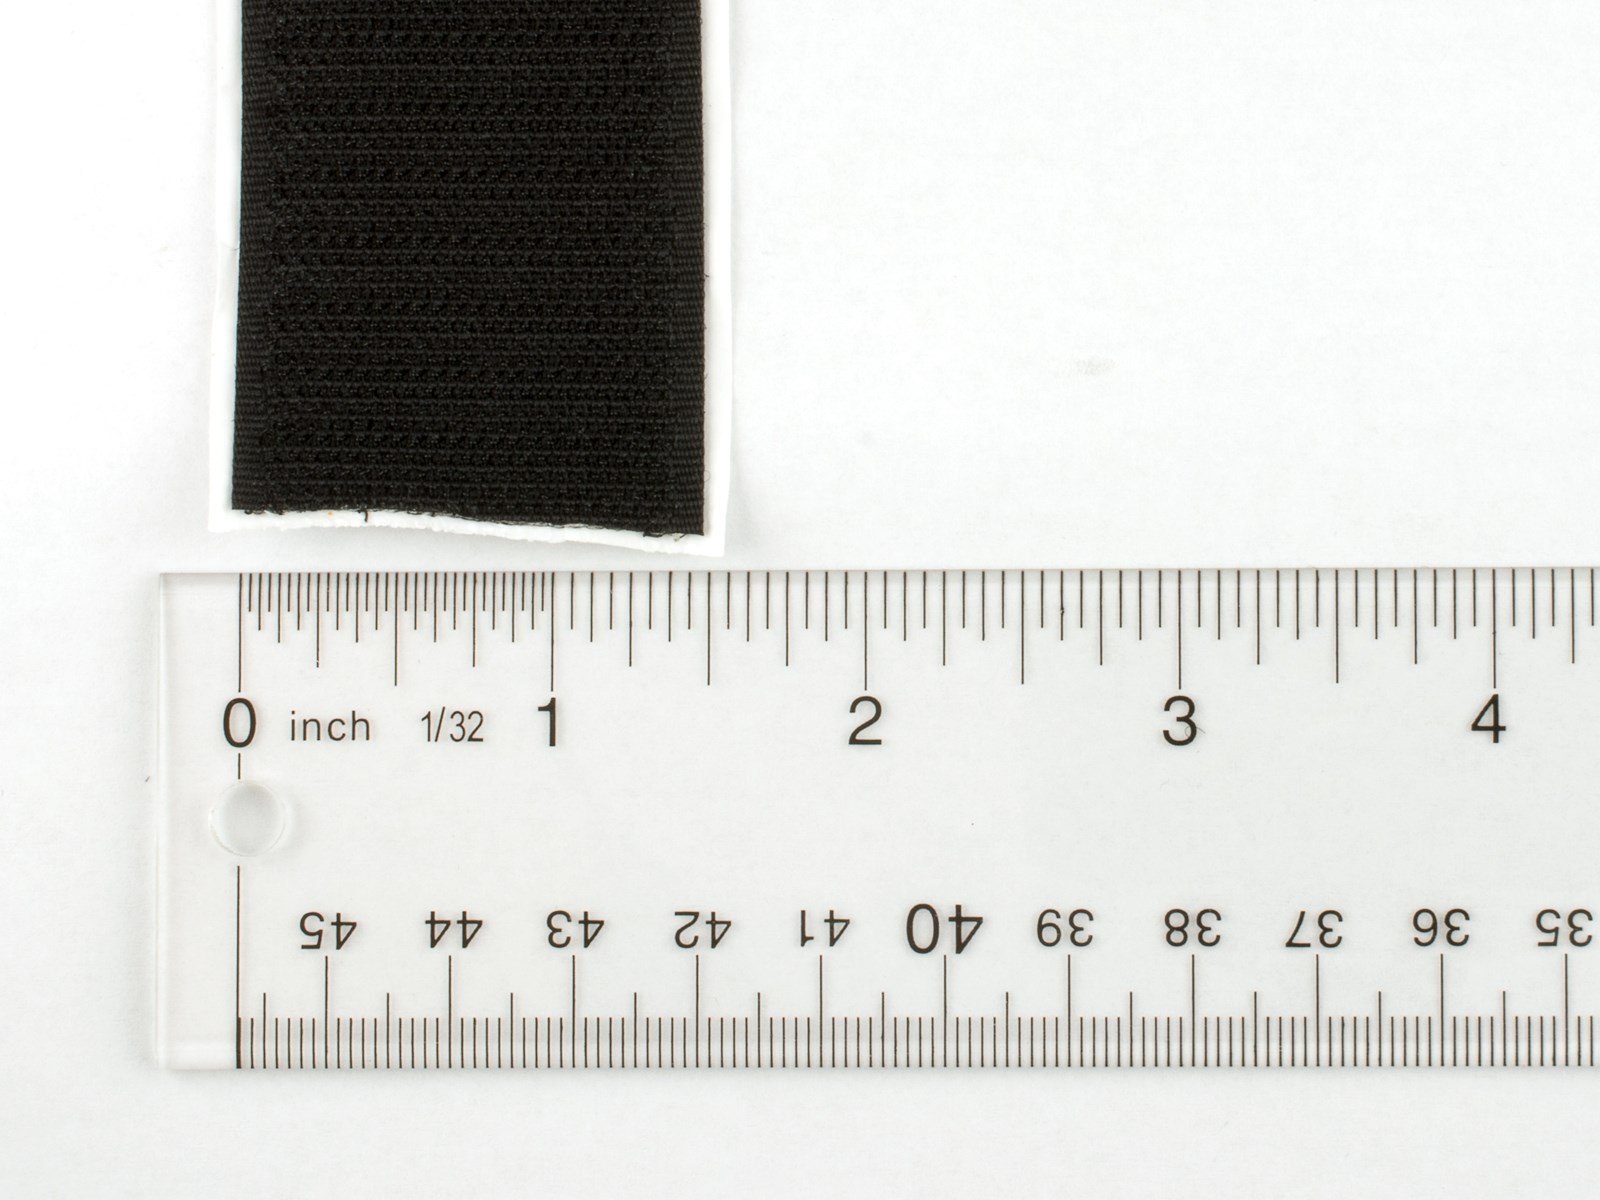 305 mm x 1 metre Black PSA HTH 805 hook sheet - V Tapes